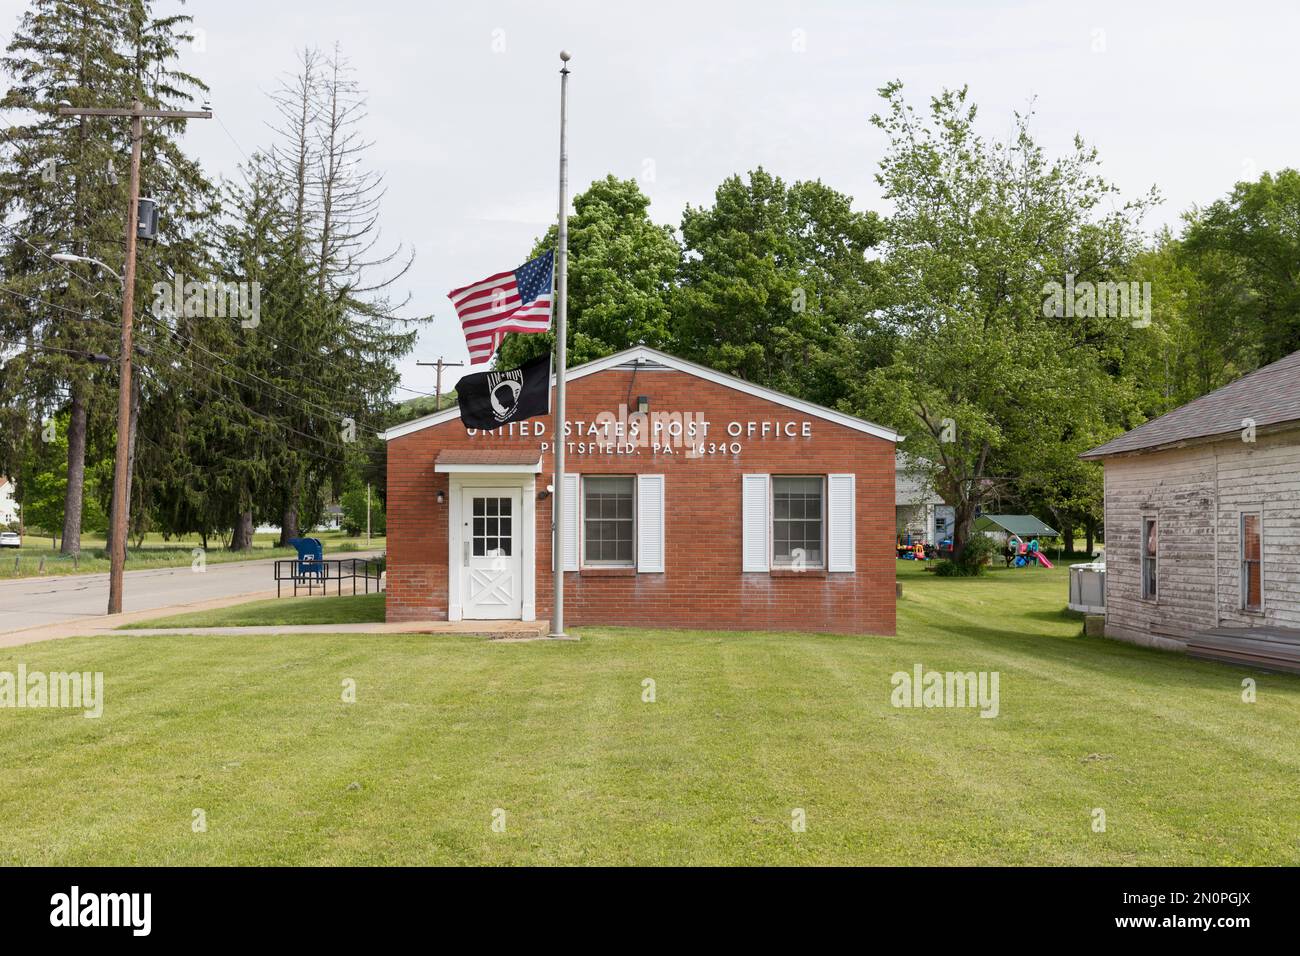 Edificio rural de oficinas de correos de Estados Unidos, con una bandera americana volando. Foto de stock